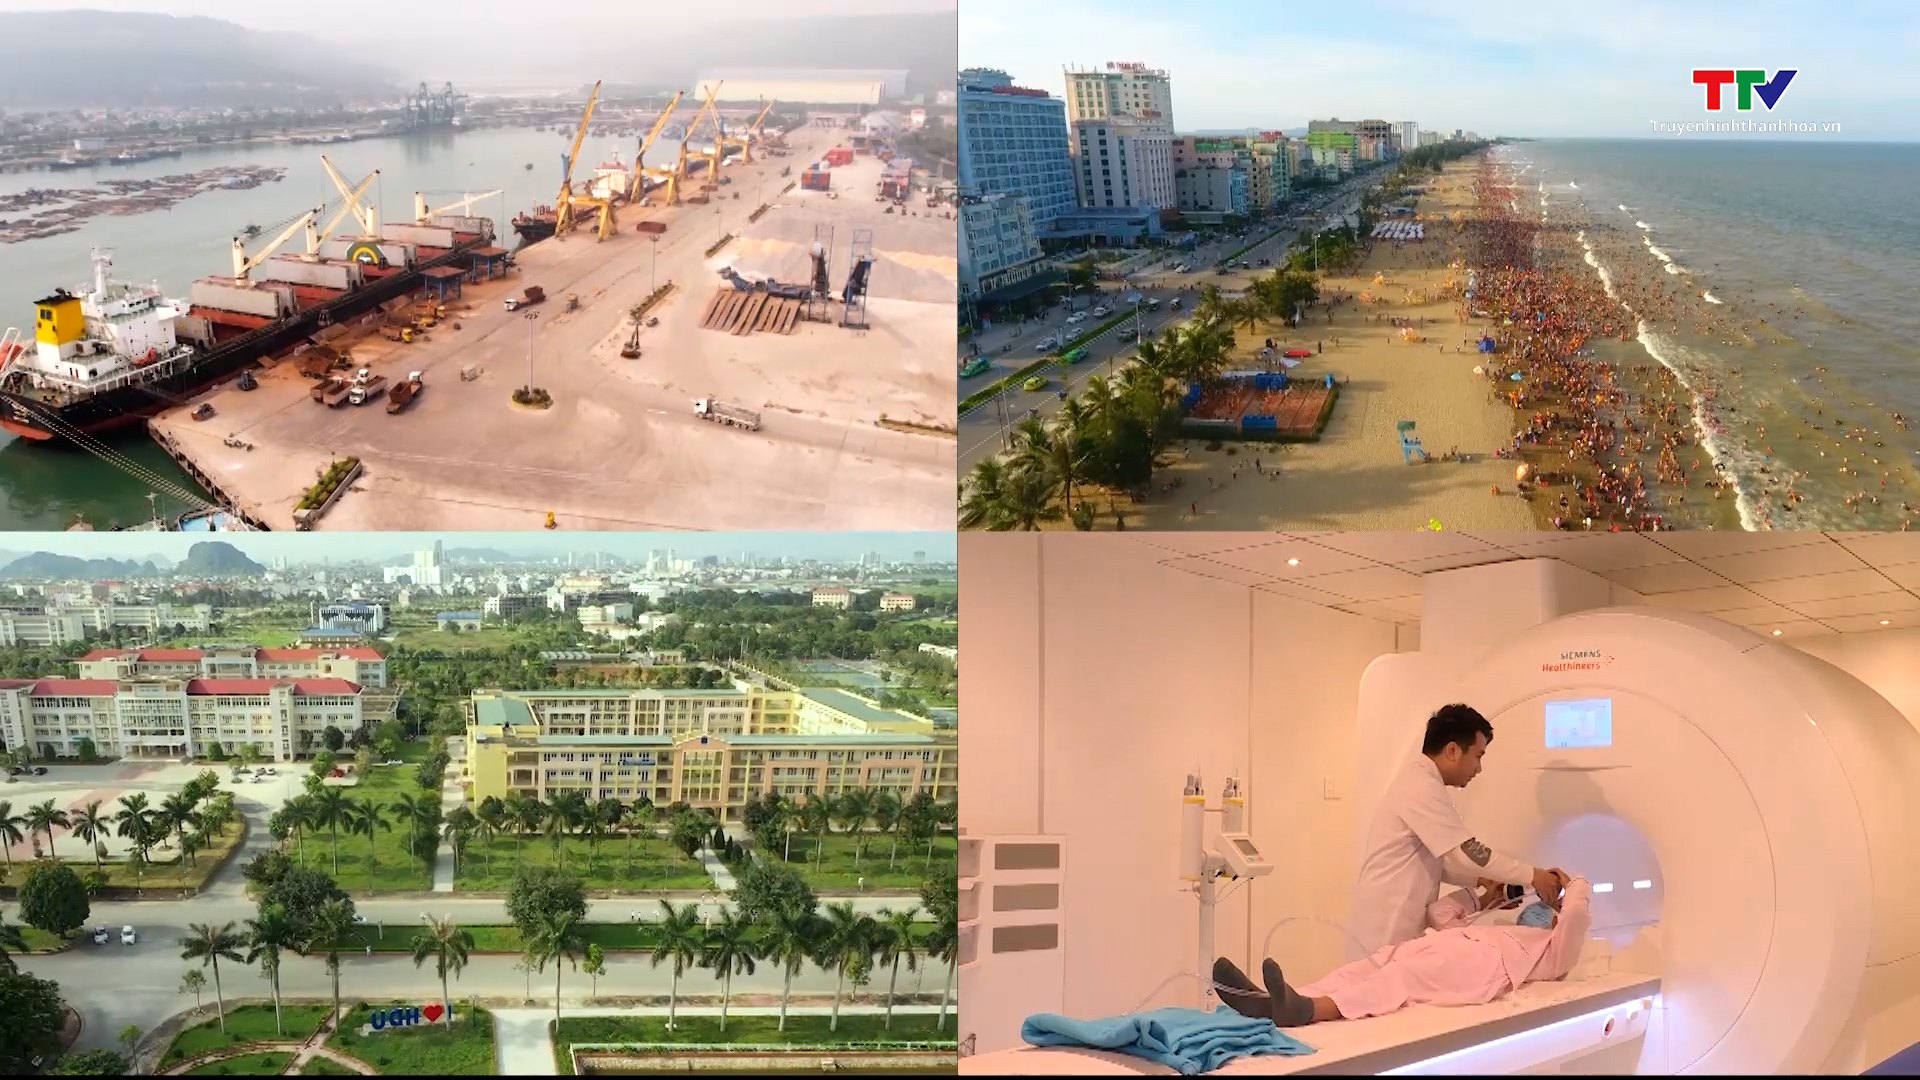 Quy hoạch tỉnh Thanh Hoá: định hướng không gian để 
phát triển nhanh, toàn diện và bền vững - Ảnh 4.